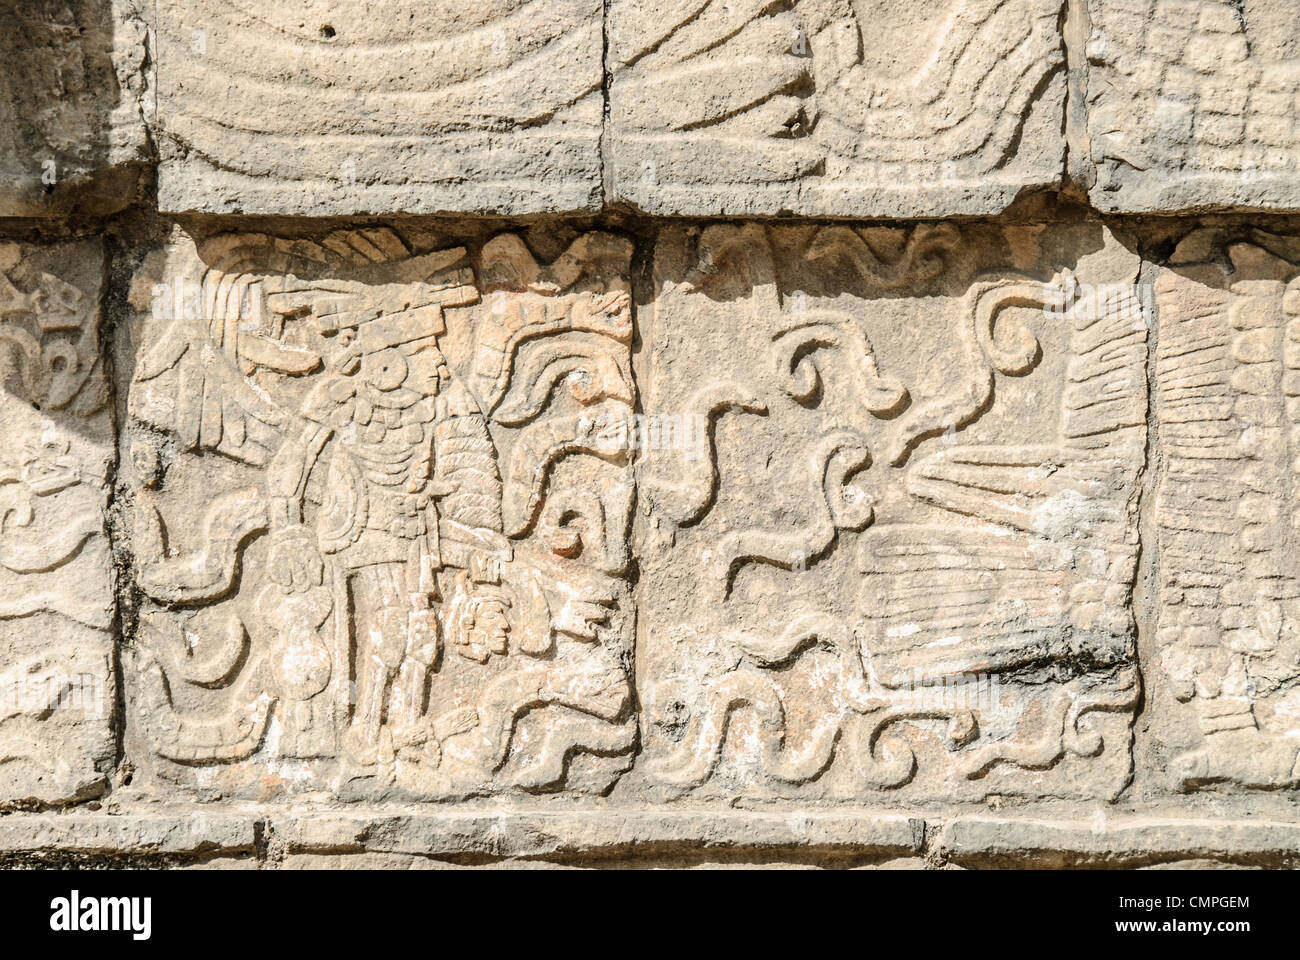 CHICHEN ITZA, Mexique - Winged Warrior dans un mur de pierre à sculpter à Chichen Itza ruines Maya, Mexique. Banque D'Images